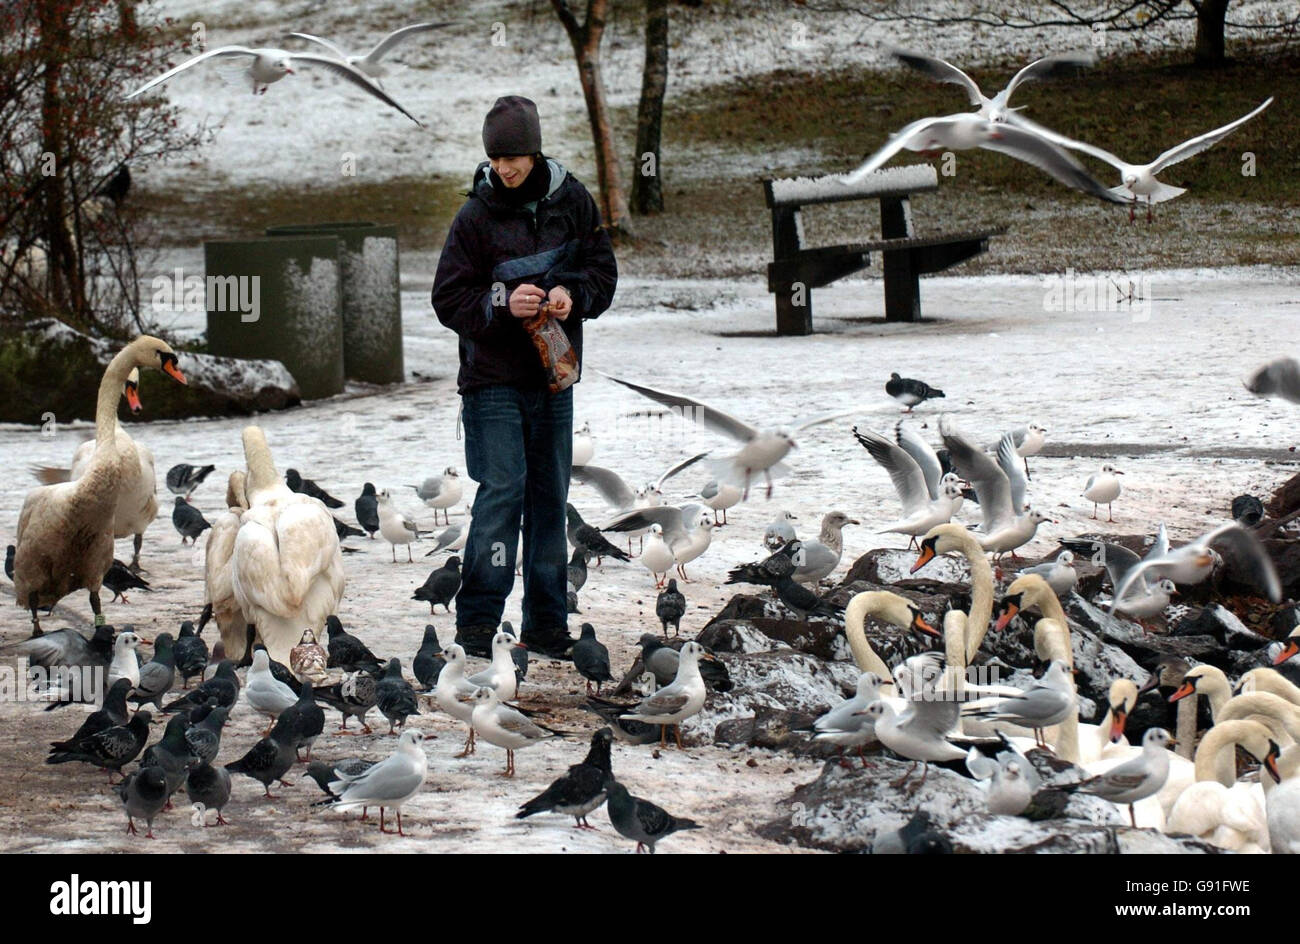 Il diciannove anni Simon Waddell alimenta gli uccelli e i cigni di Holyrood Park, Edimburgo, venerdì 25 novembre 2005, come la neve è caduta durante la notte. Parti della Scozia, dell'Inghilterra e del Galles sono state oggi rinforzate per più disgregazione mentre le docce invernali hanno continuato. Ieri, dopo la prima nevicata dell'inverno, le strade sono state chiuse e gli studenti sono stati rimessi a casa nel nord della Scozia. Vedi PA Story WEATHER Snow. PREMERE ASSOCIAZIONE foto. Il credito fotografico dovrebbe essere: Danny Lawson/PA Foto Stock